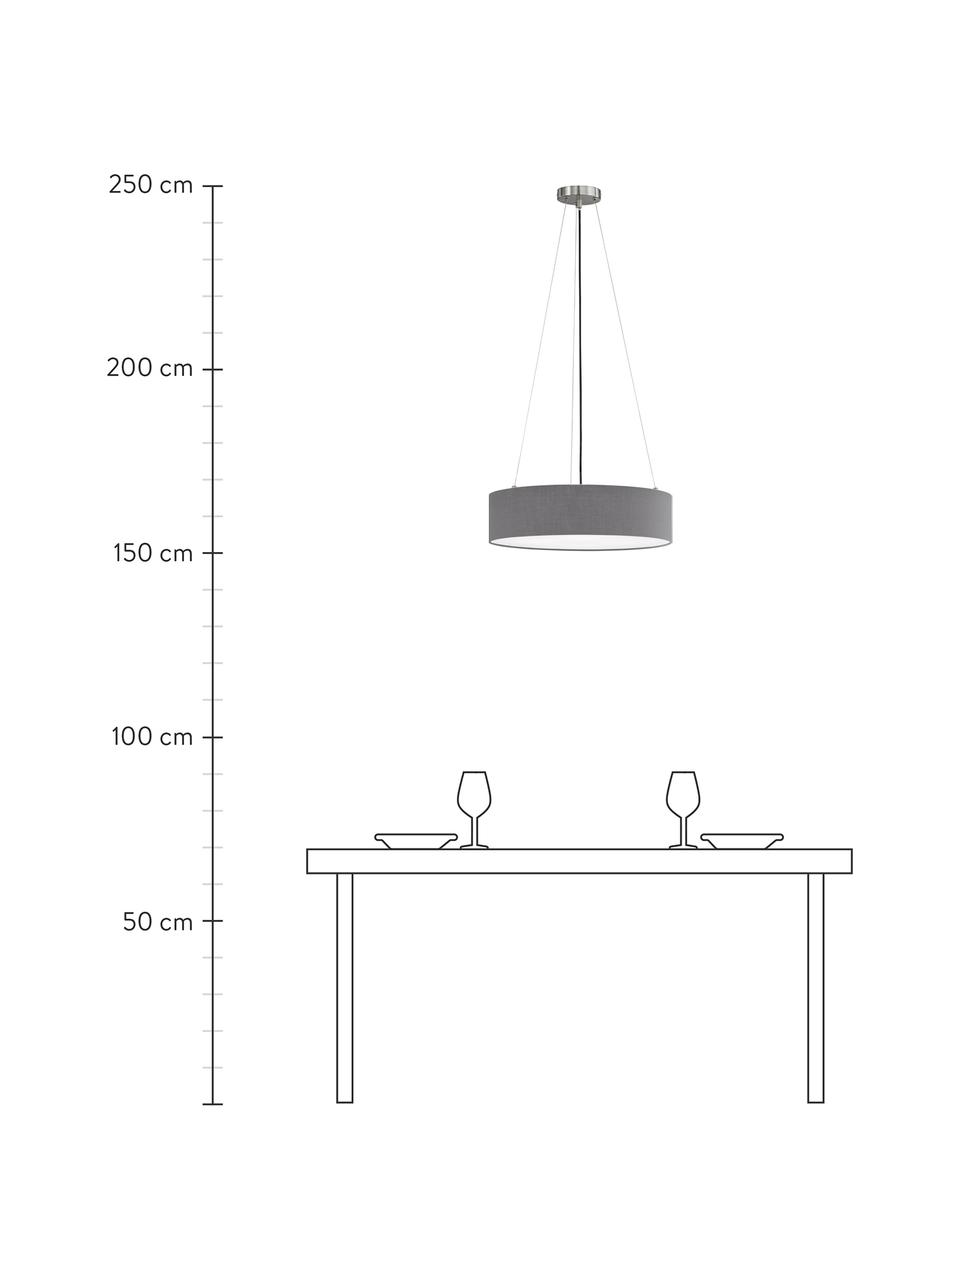 Klassieke hanglamp Pina in donkergrijs, Lampenkap: stof (sits), Diffuser: kunststof, Baldakijn: metaal, Grijs, Ø 50 x H 13 cm